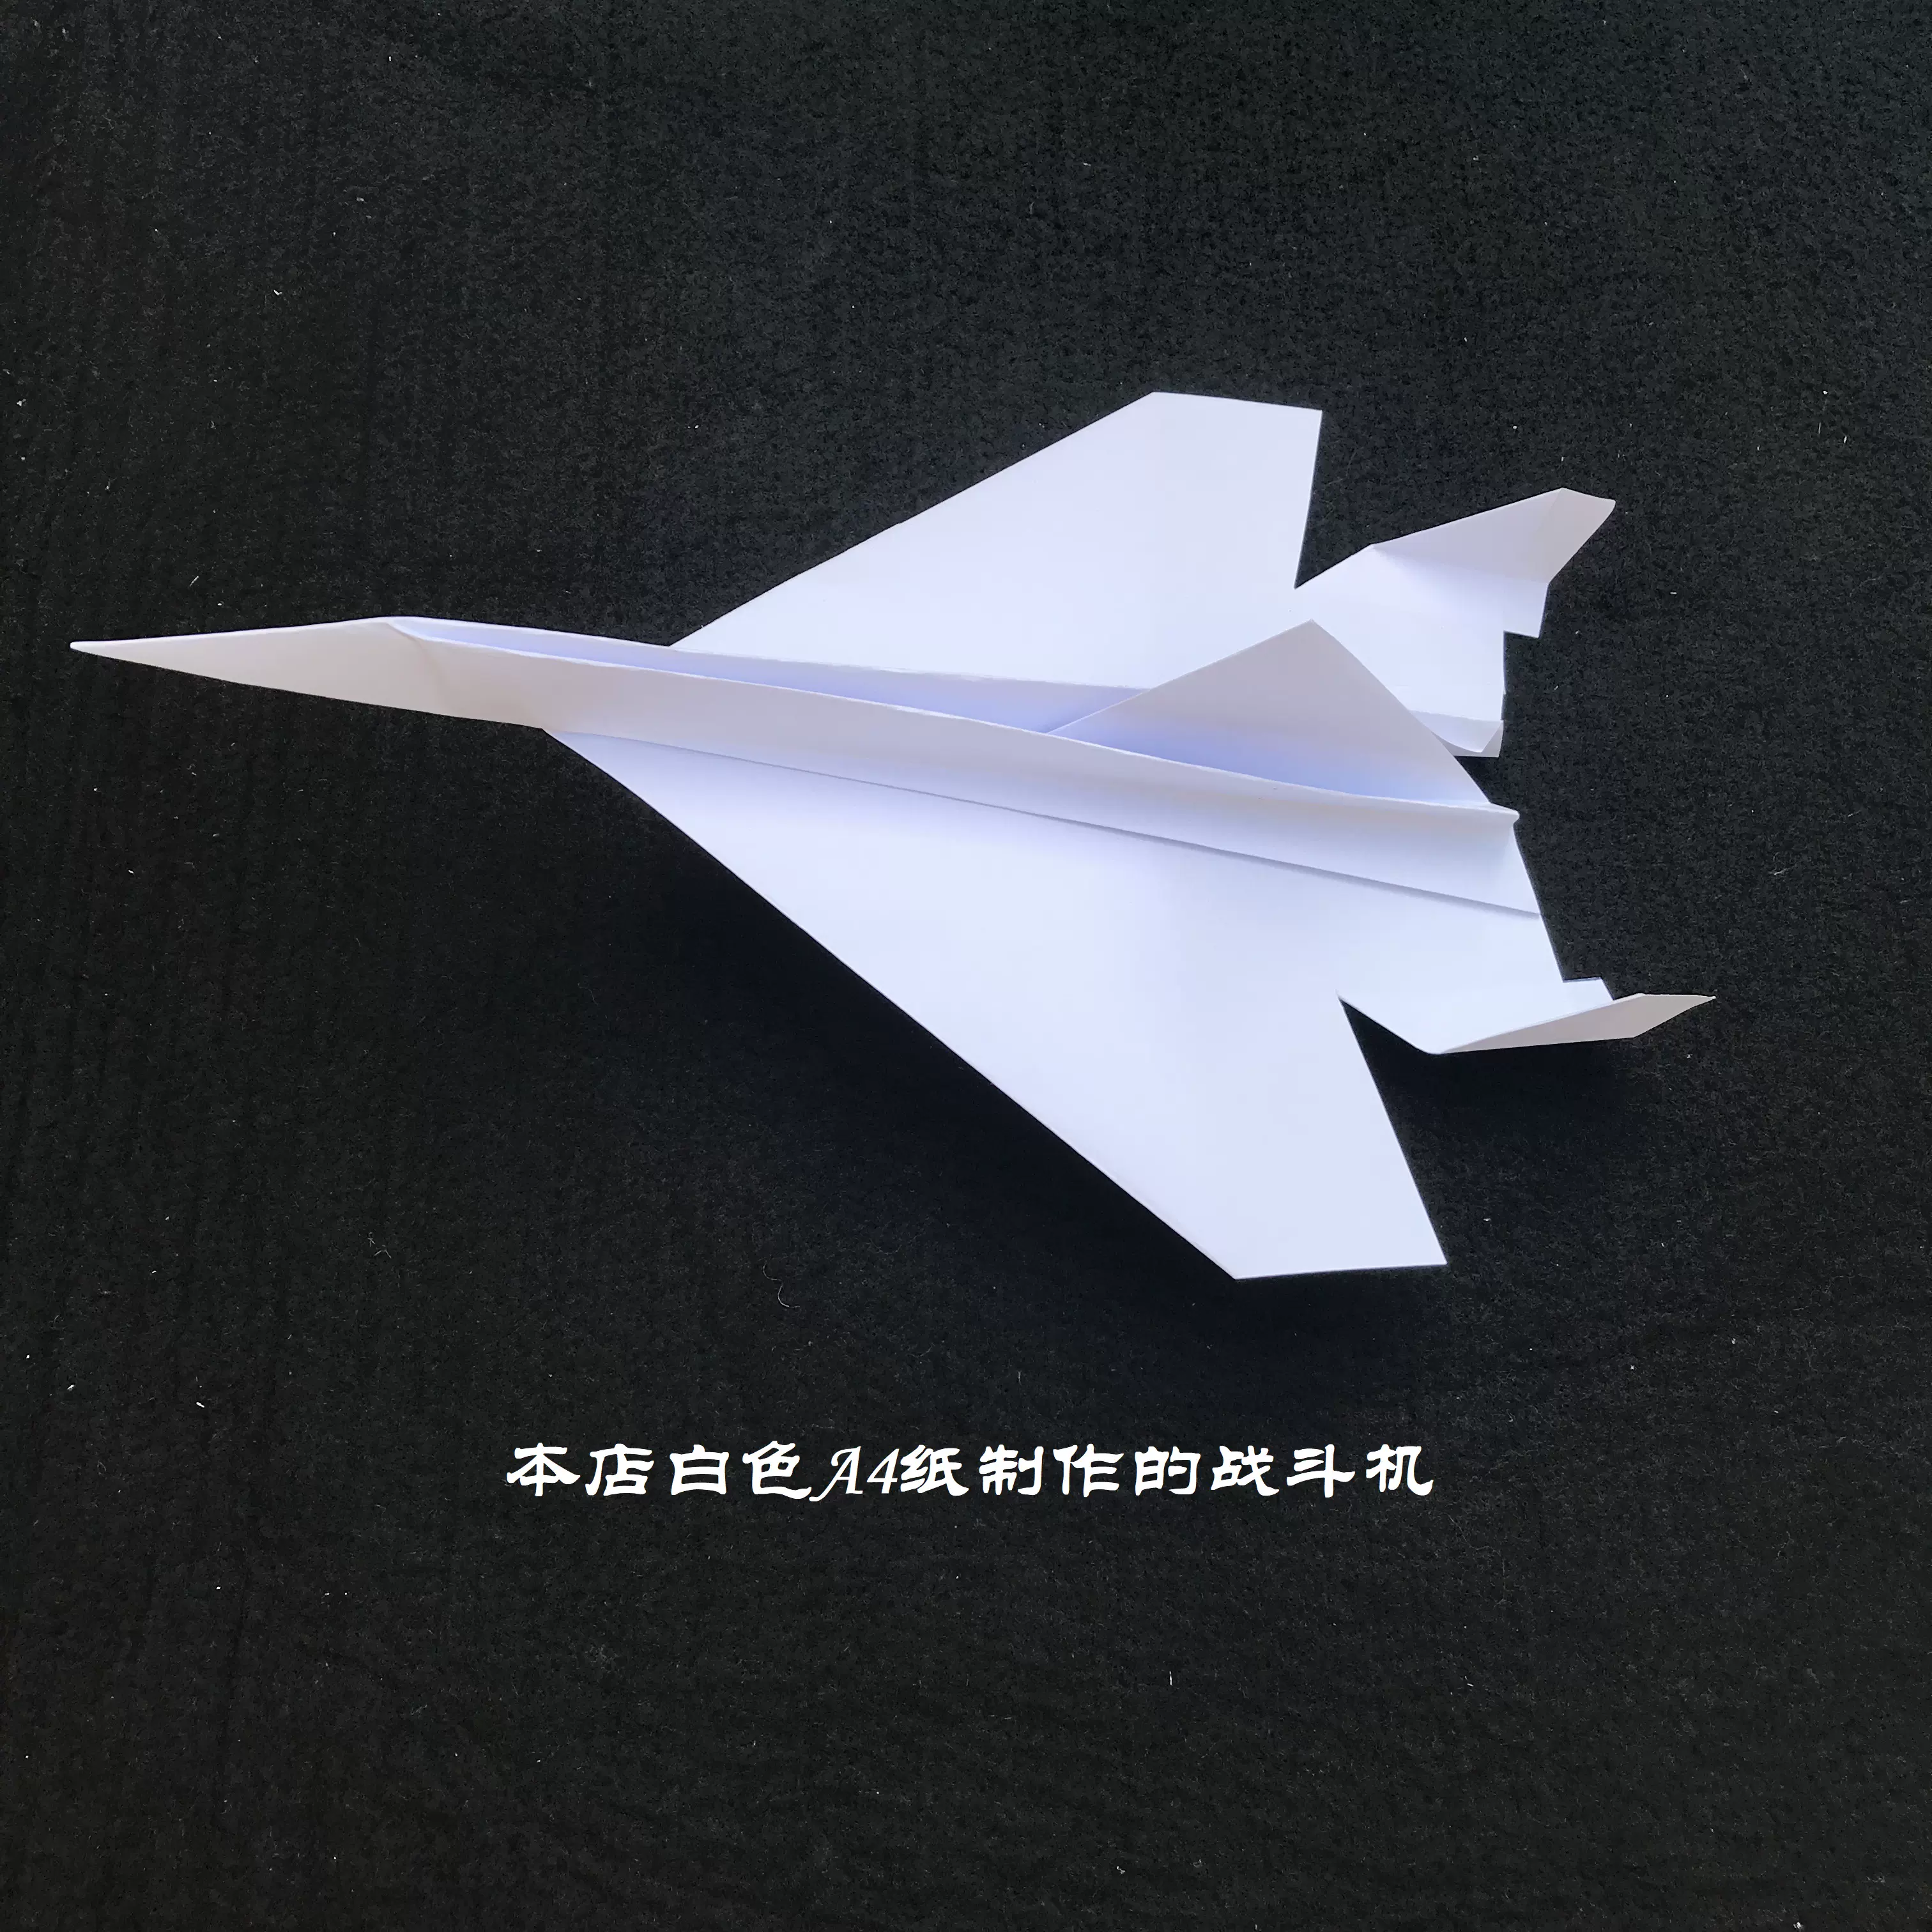 一張a4紙折出好飛戰鬥機仿真紙飛機親子手工diy 創意